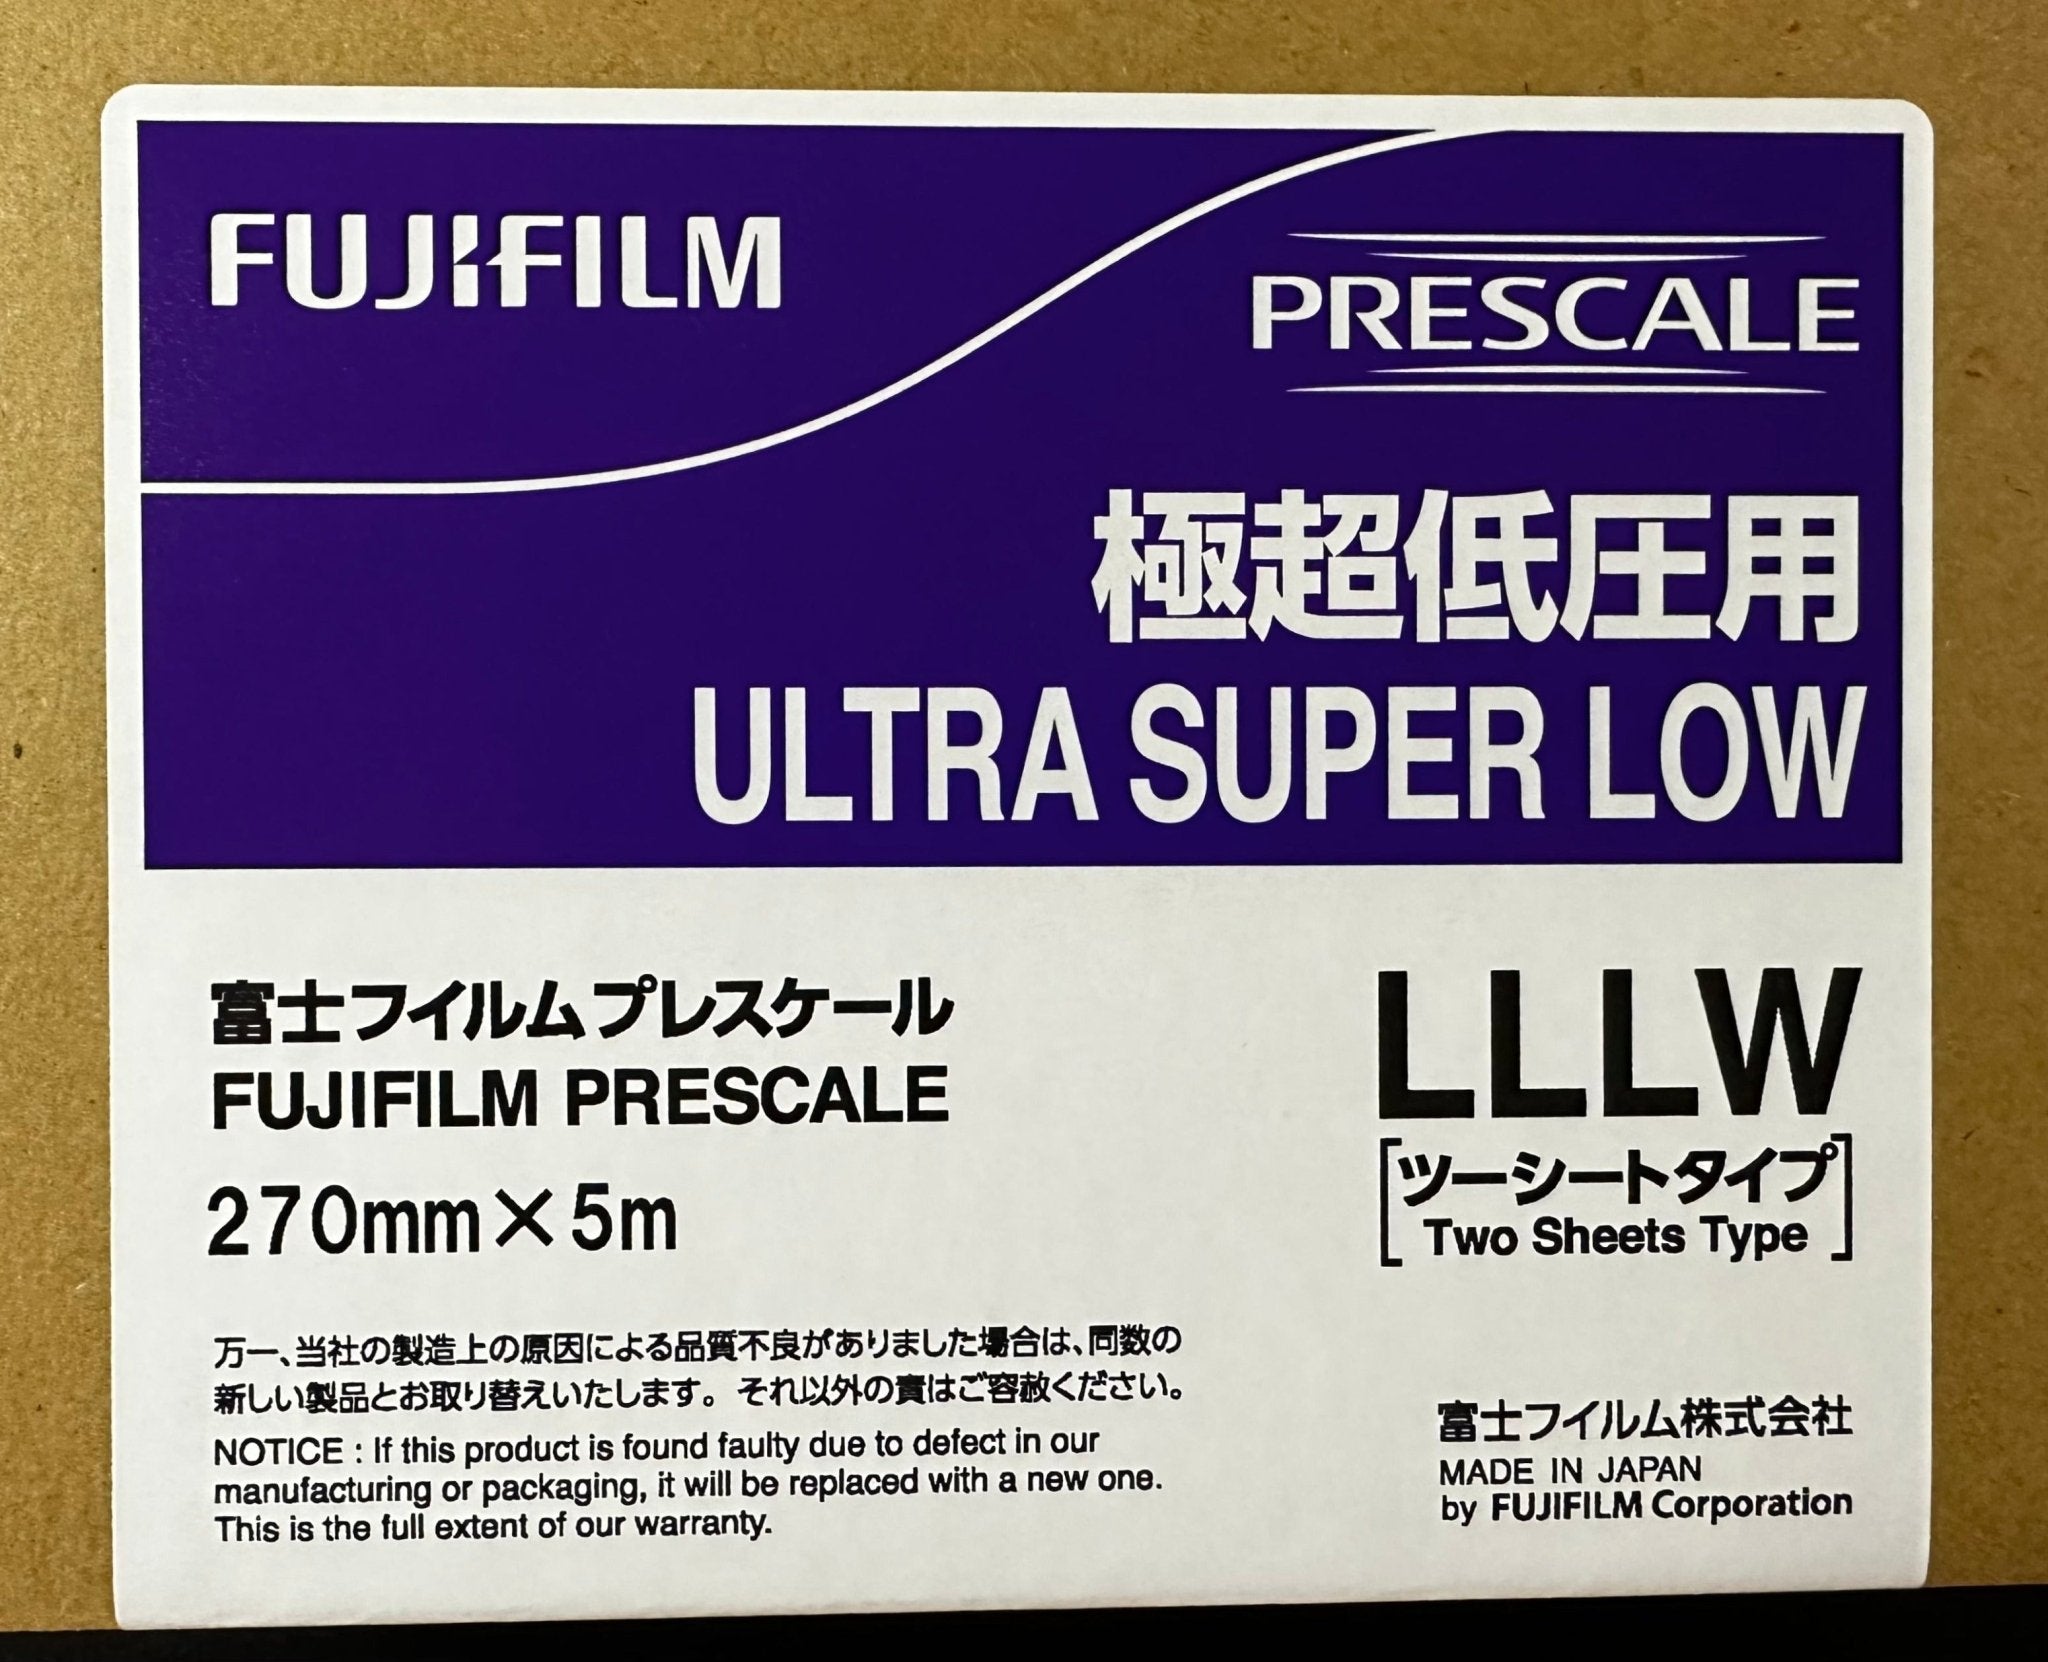 日替わりスペシャル 富士フイルム プレスケール極超低圧用 LLLW - 研究